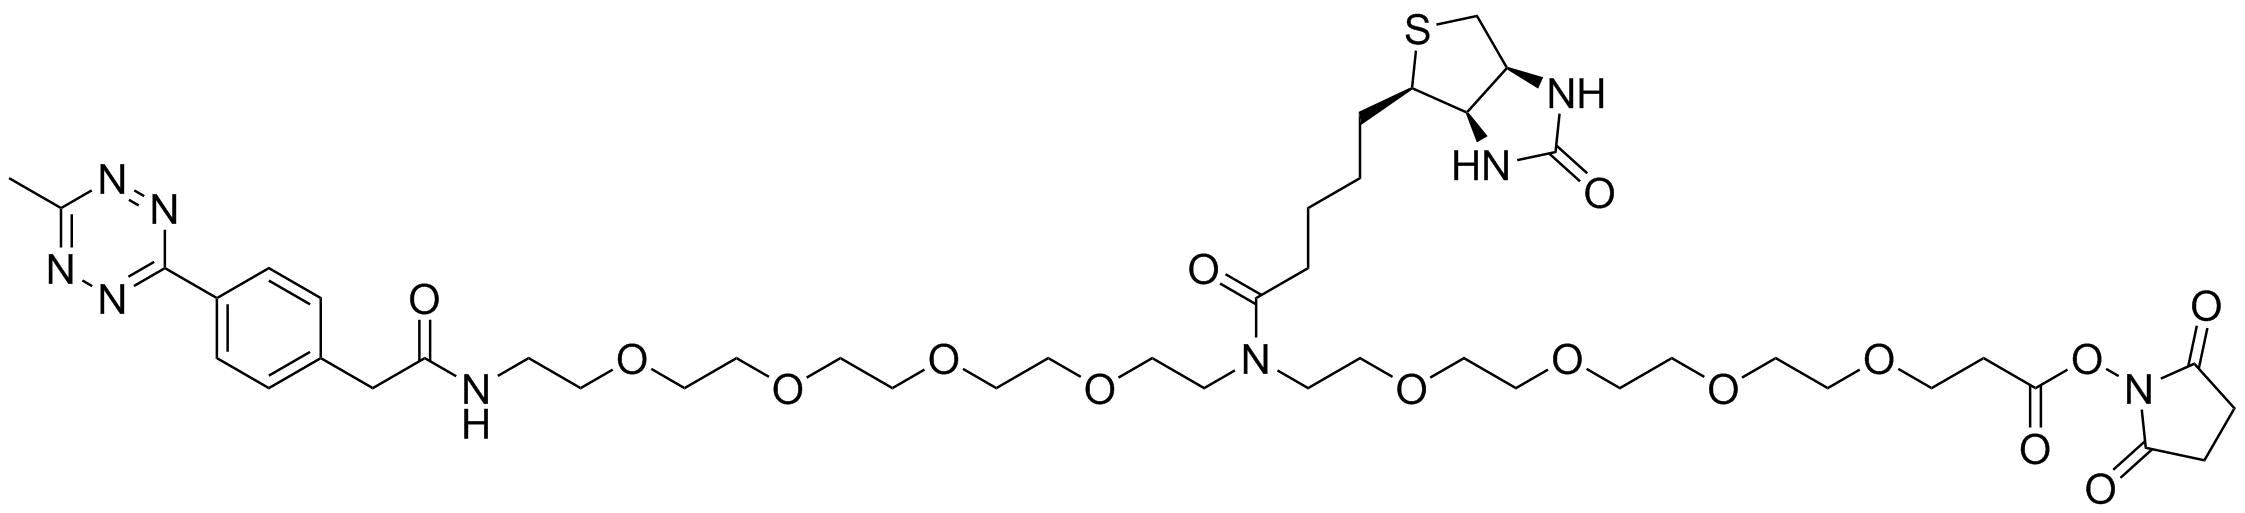 N-(Methyltetrazine-PEG4)-N-Biotin-PEG4-NHS